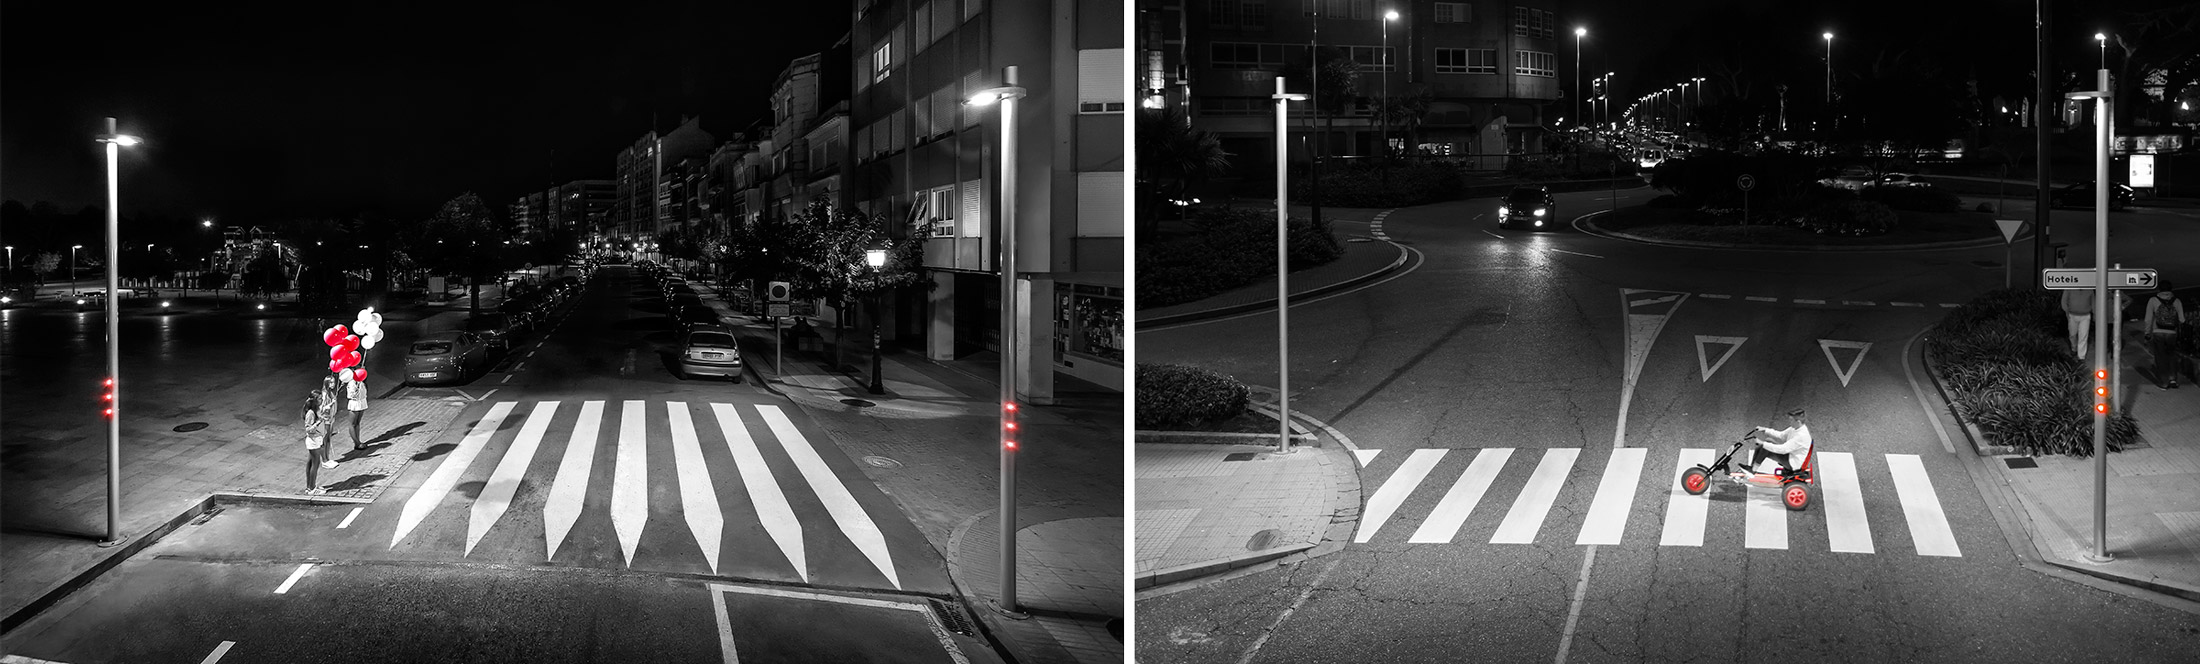 Luz interactiva para proteger vidas en los pasos de peatones